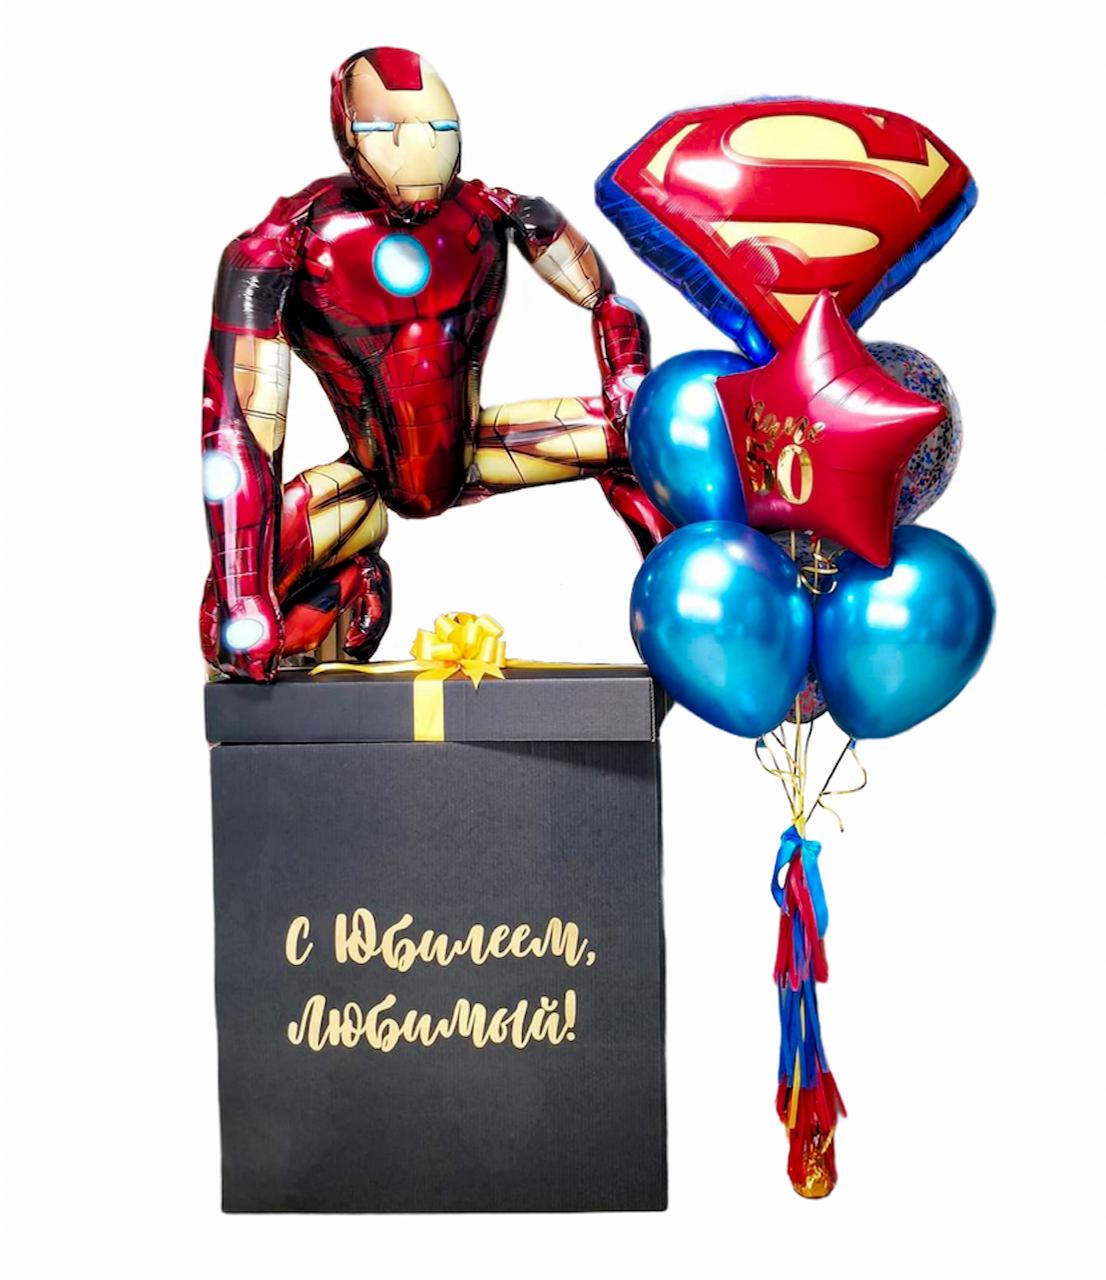 - Декорированная коробка
- 1 Ходячая фигура Железный человек
- 1 Фигура Эмблема Супермен
- 1 Фольгированная звезда 45см с надписью
- 5 Шаров Хром
- Утяжелитель